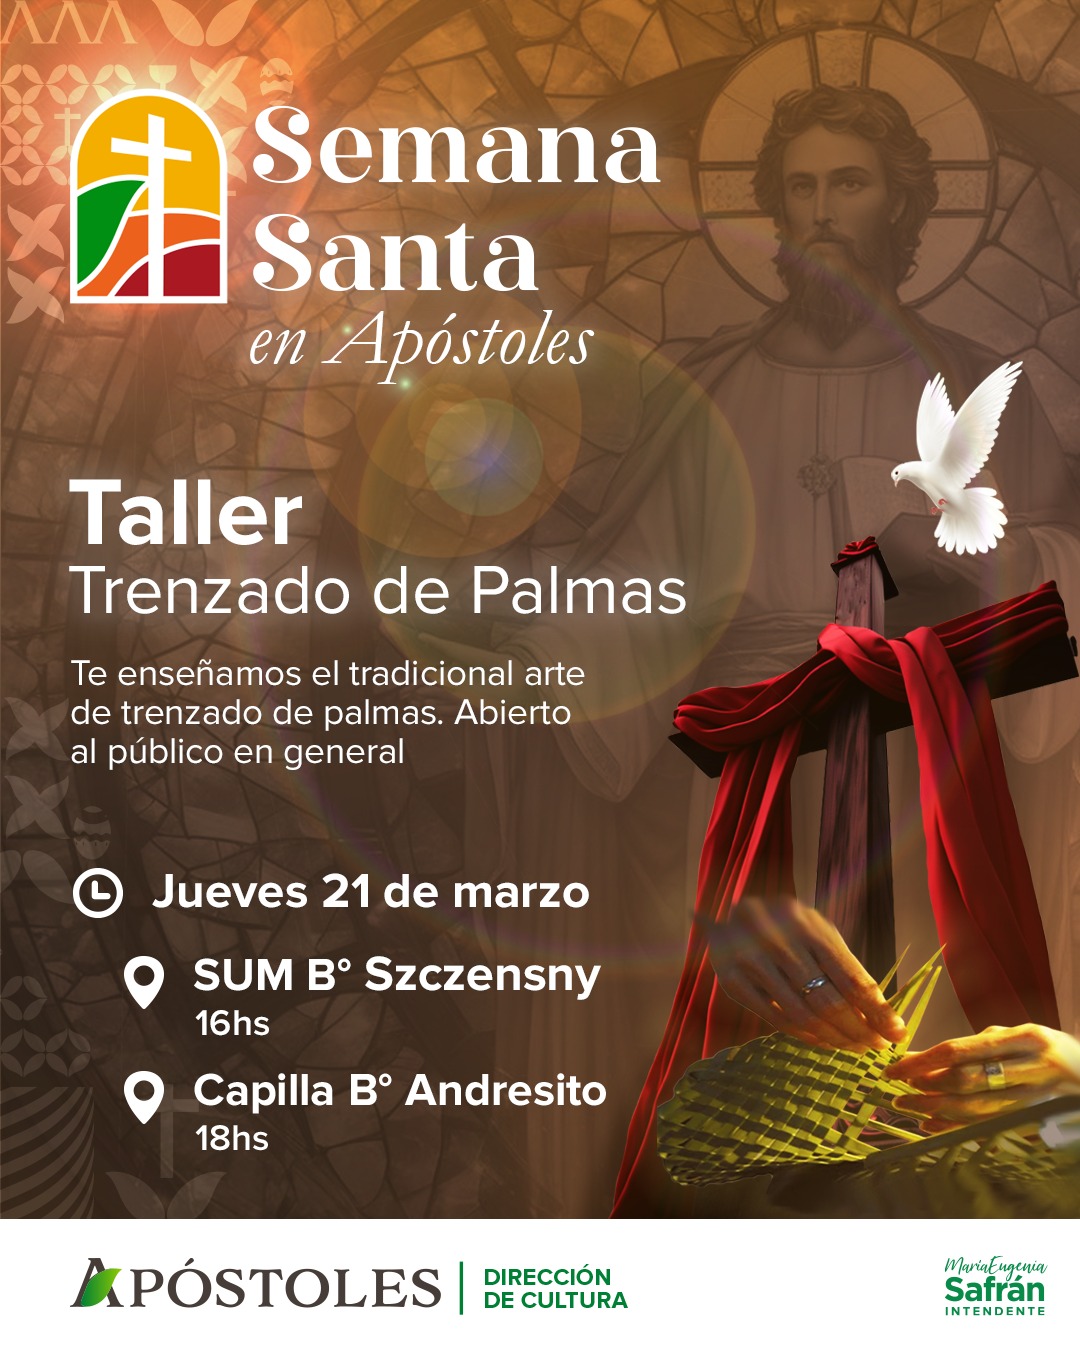 Semana Santa en Apóstoles: taller de trenzado de palmas en diferentes puntos de la ciudad imagen-2